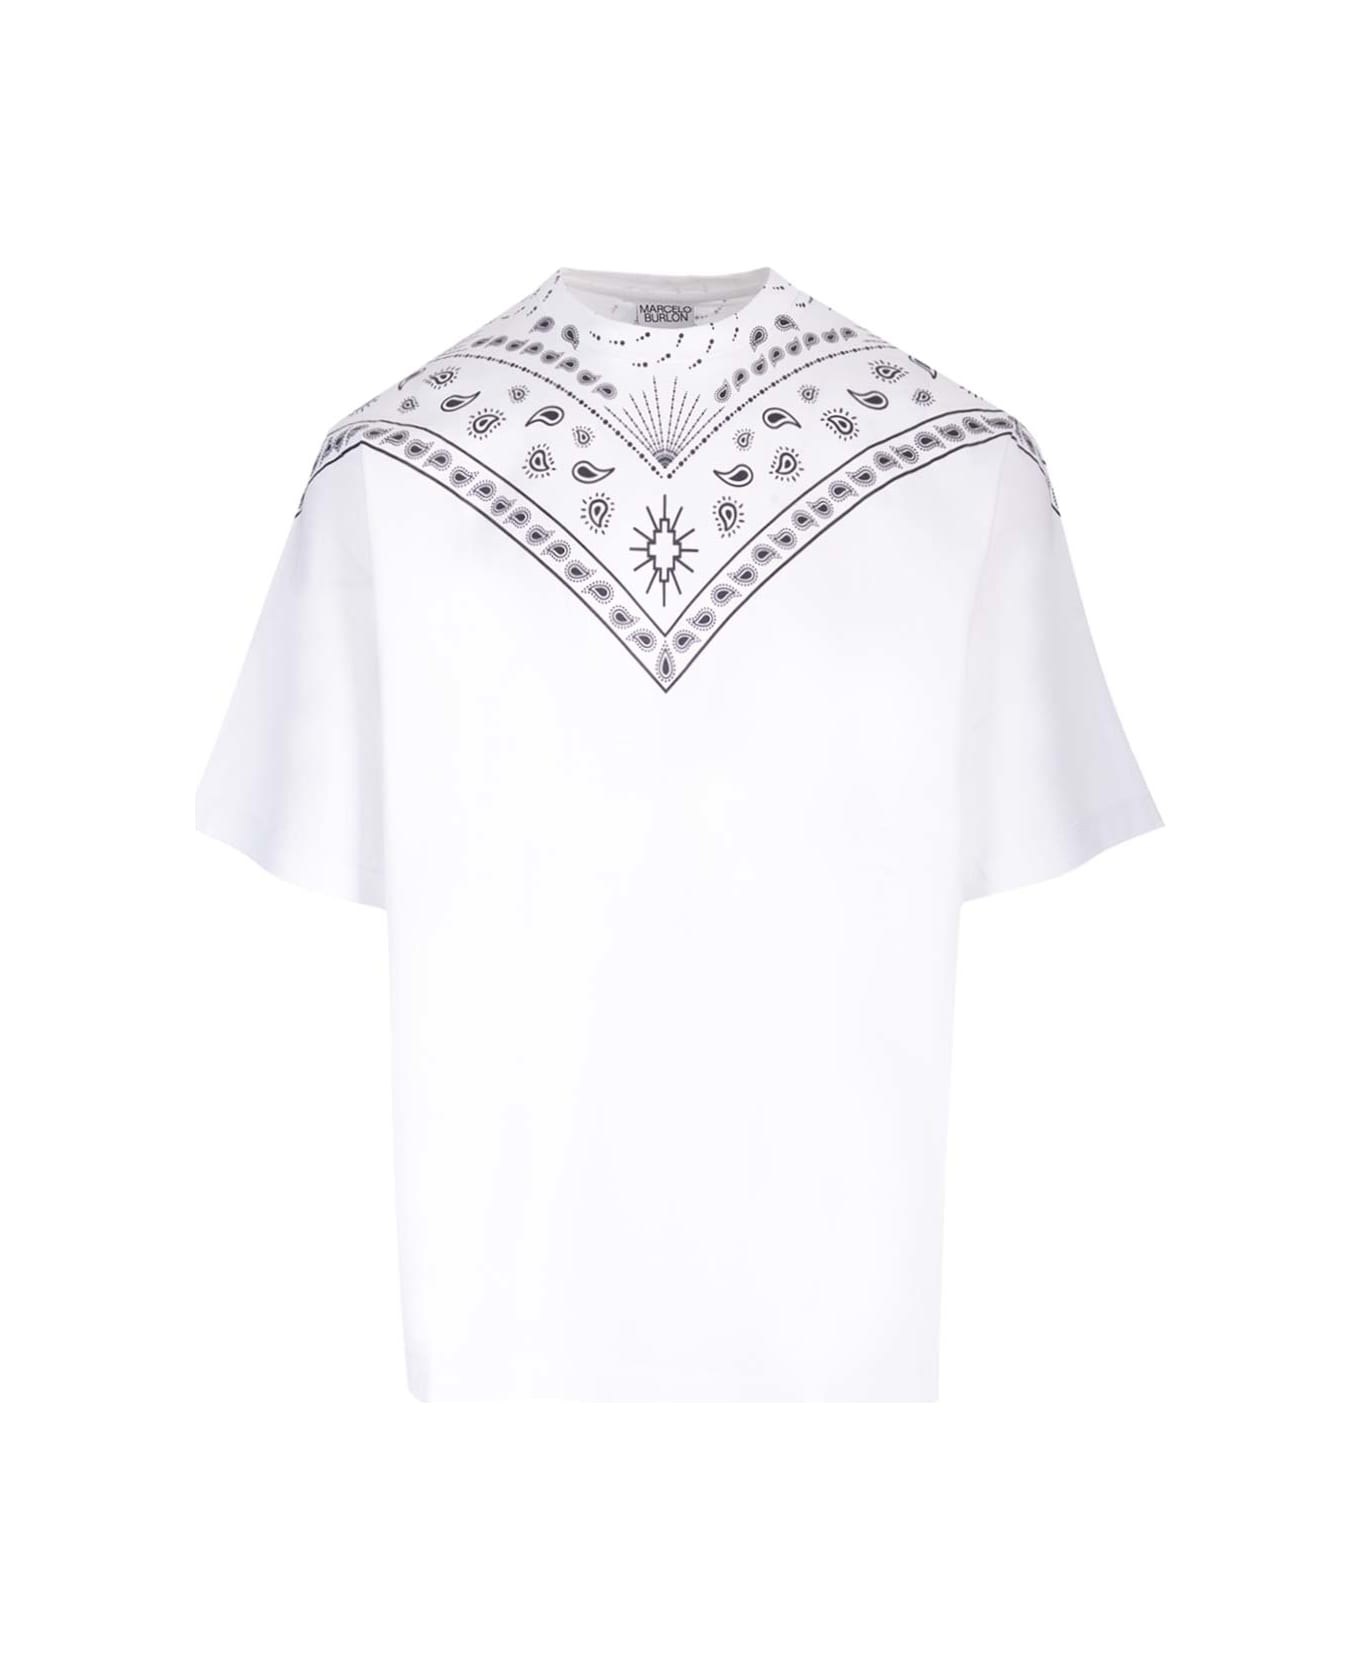 Marcelo Burlon Oversized T-shirt - White シャツ